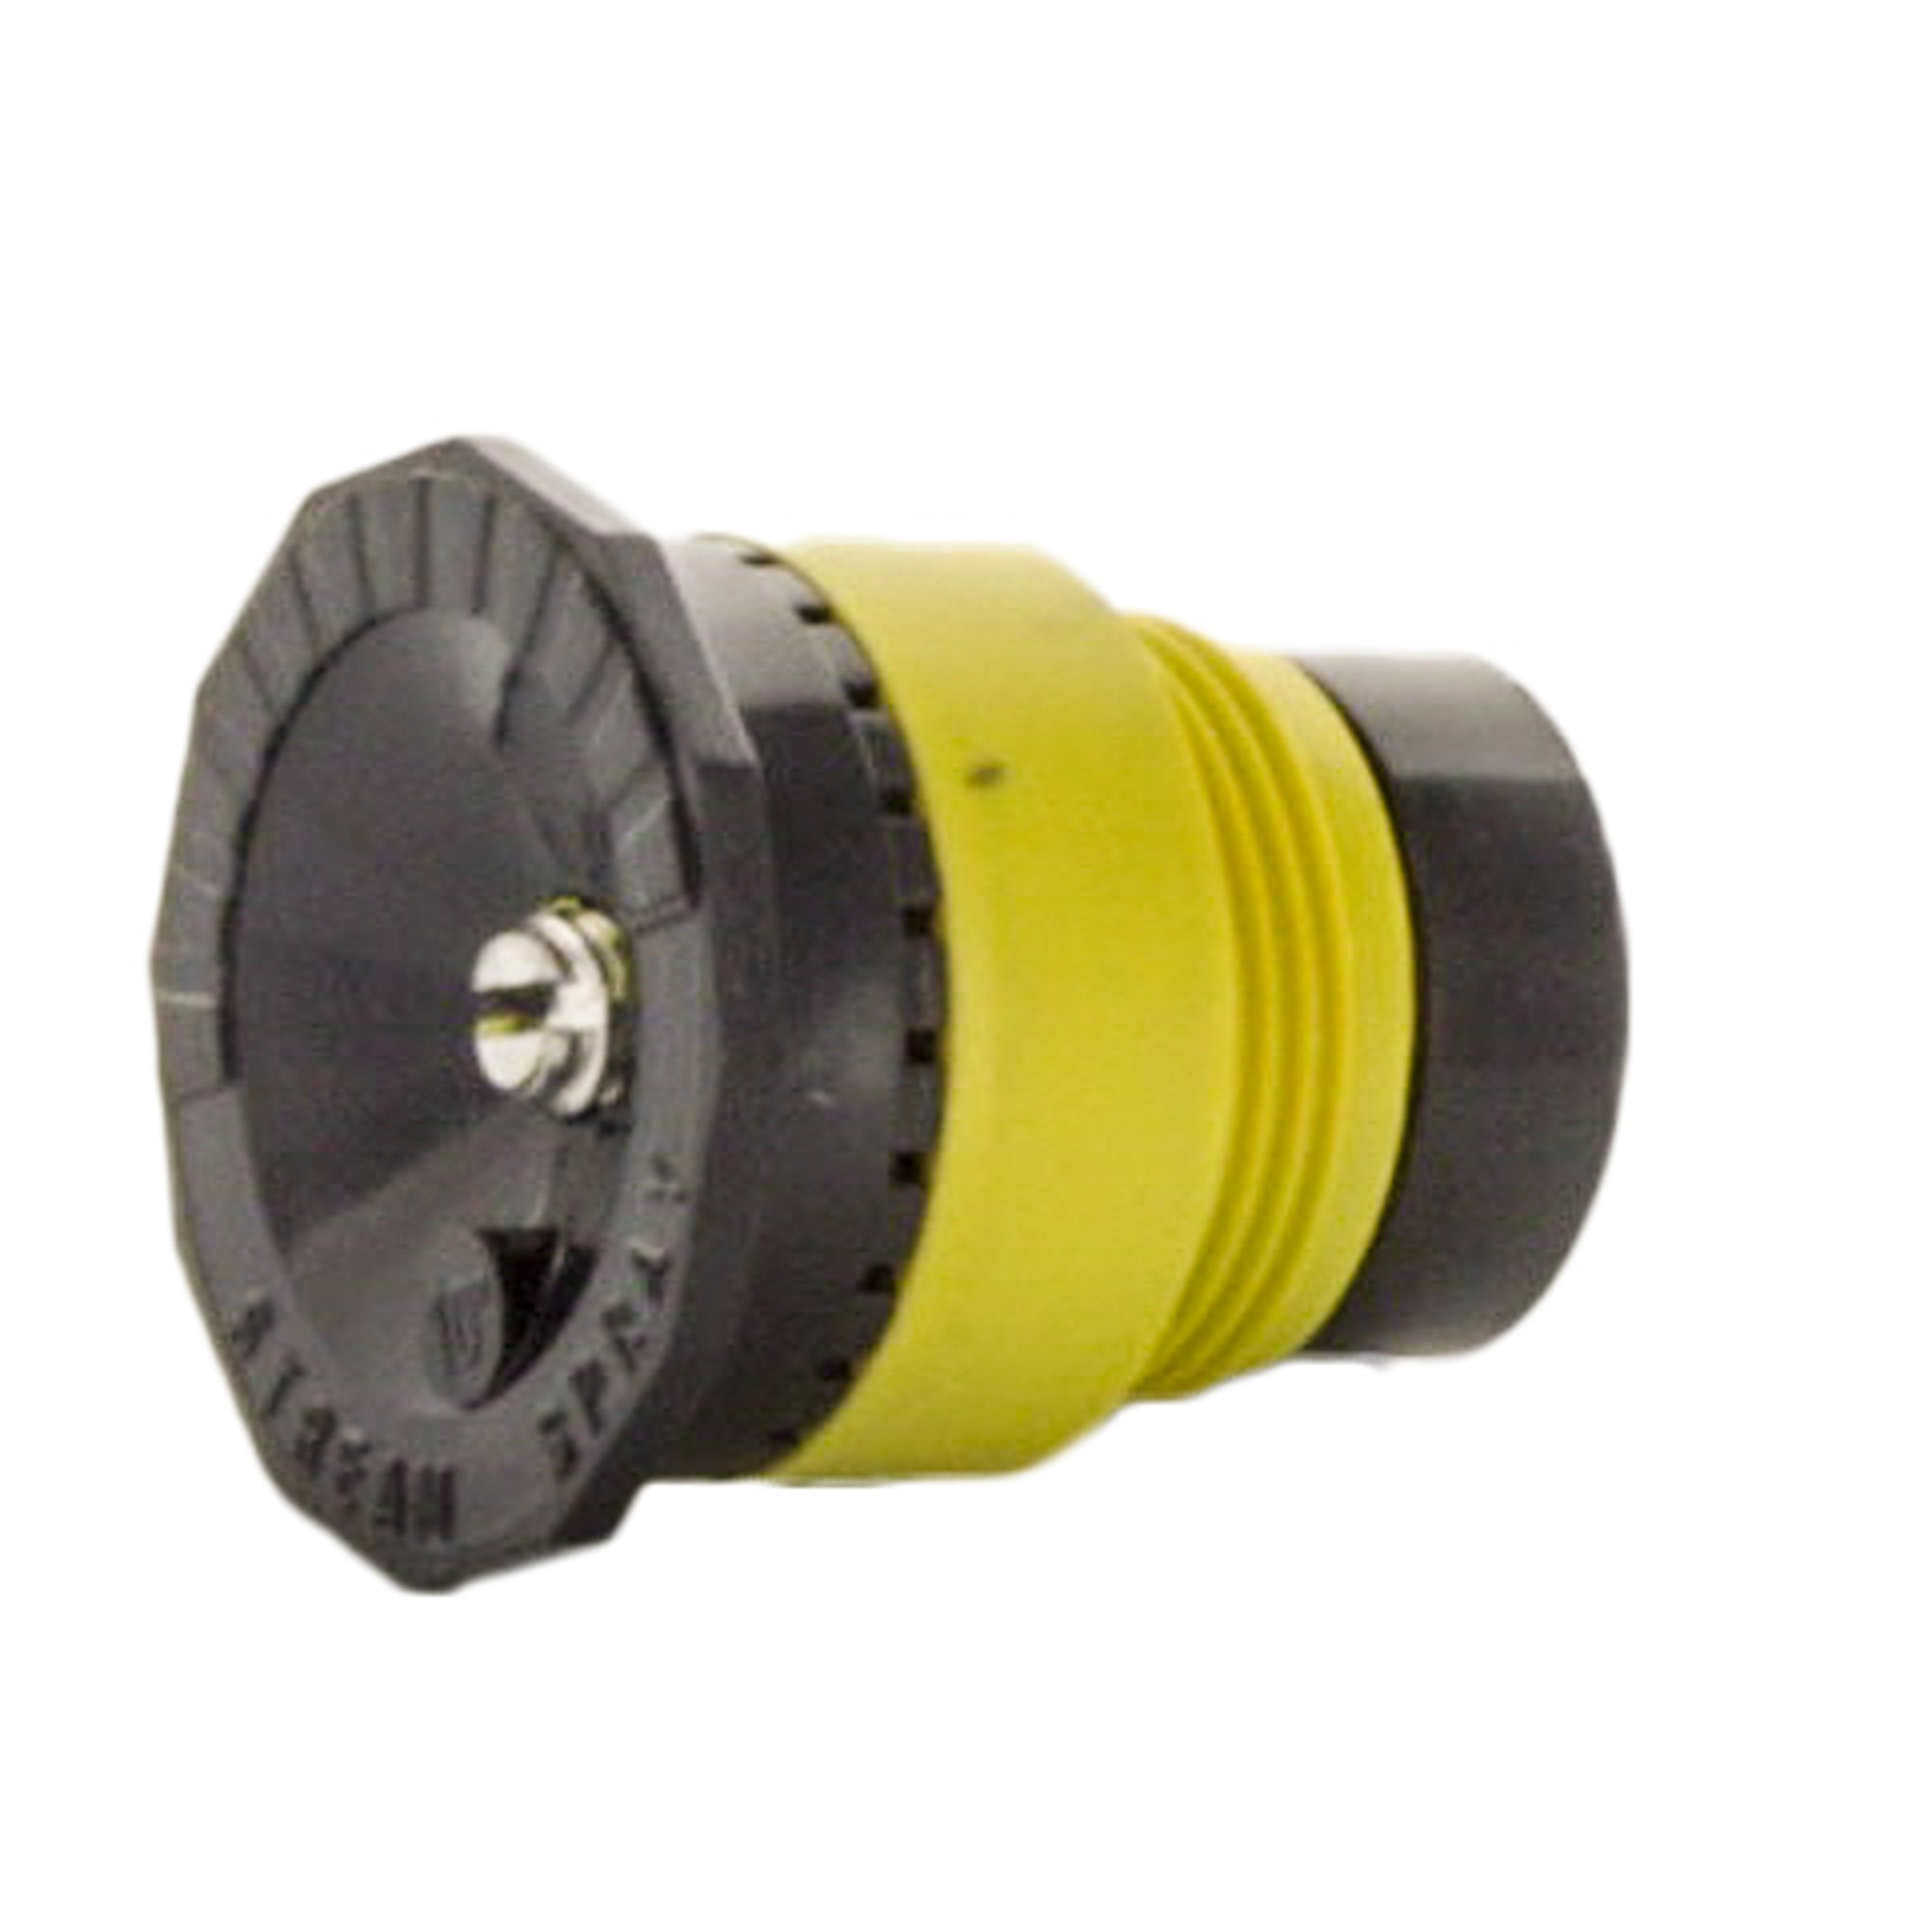 Toro - 89-1519 - 10-SSF-PC, Stream Spray Nozzle, Pressure Compensating, FULL Circle, 10 degree